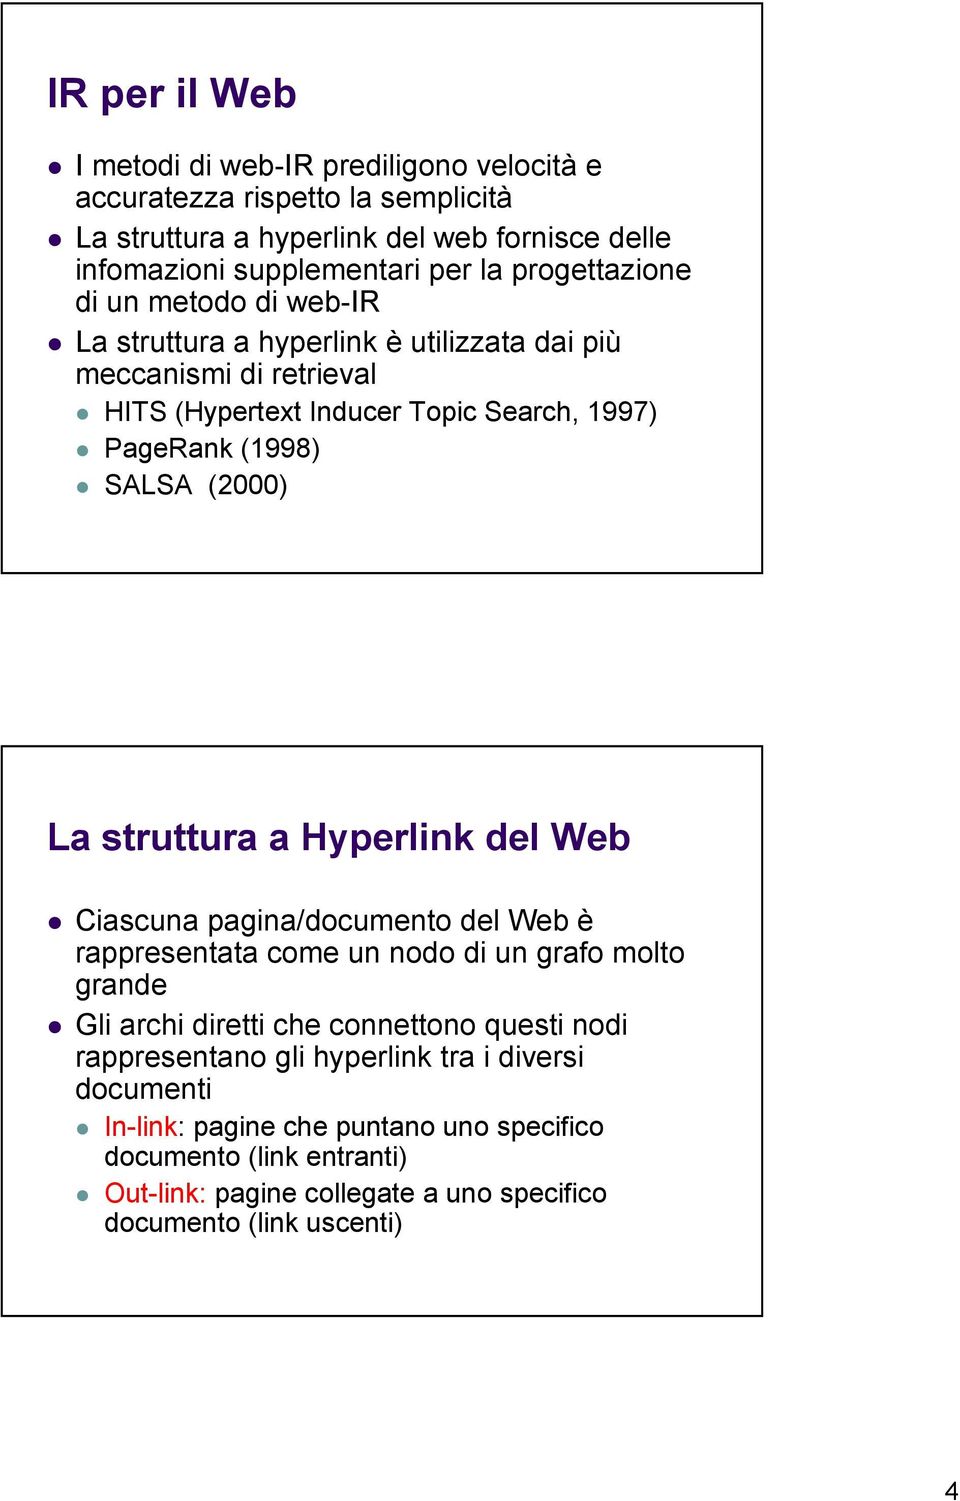 La struttura a Hyperlink del Web Ciascuna pagina/documento del Web è rappresentata come un nodo di un grafo molto grande Gli archi diretti che connettono questi nodi